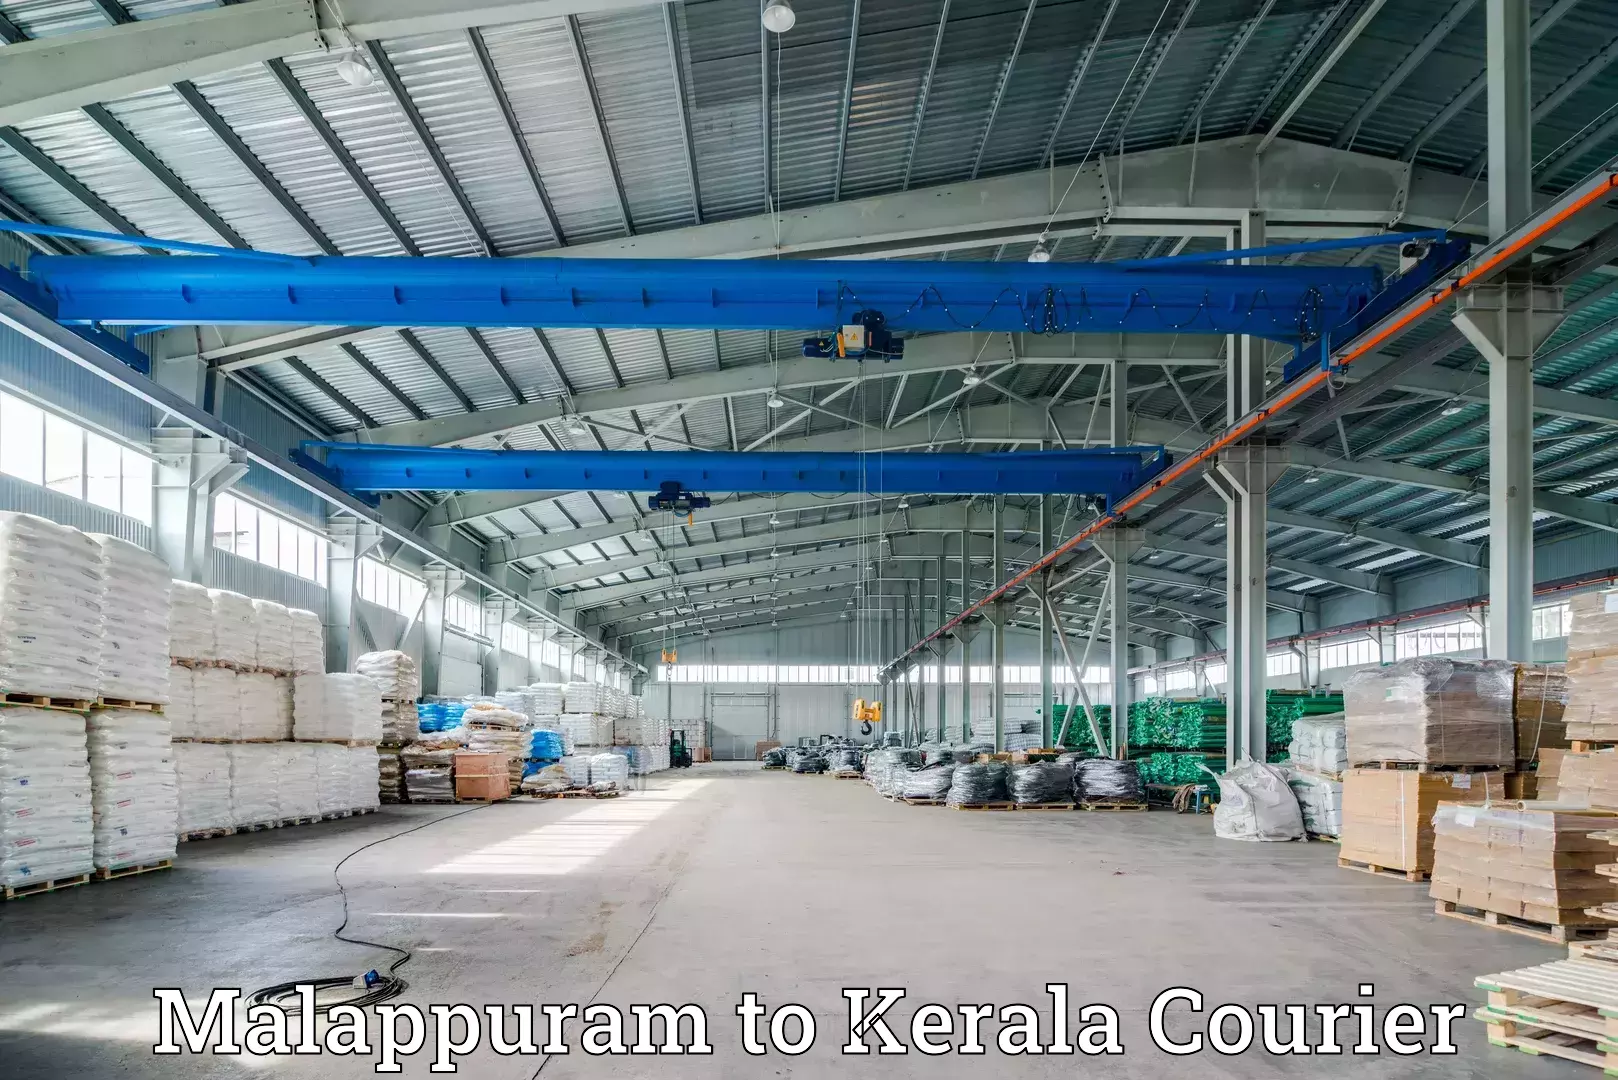 Next-day freight services Malappuram to Kerala